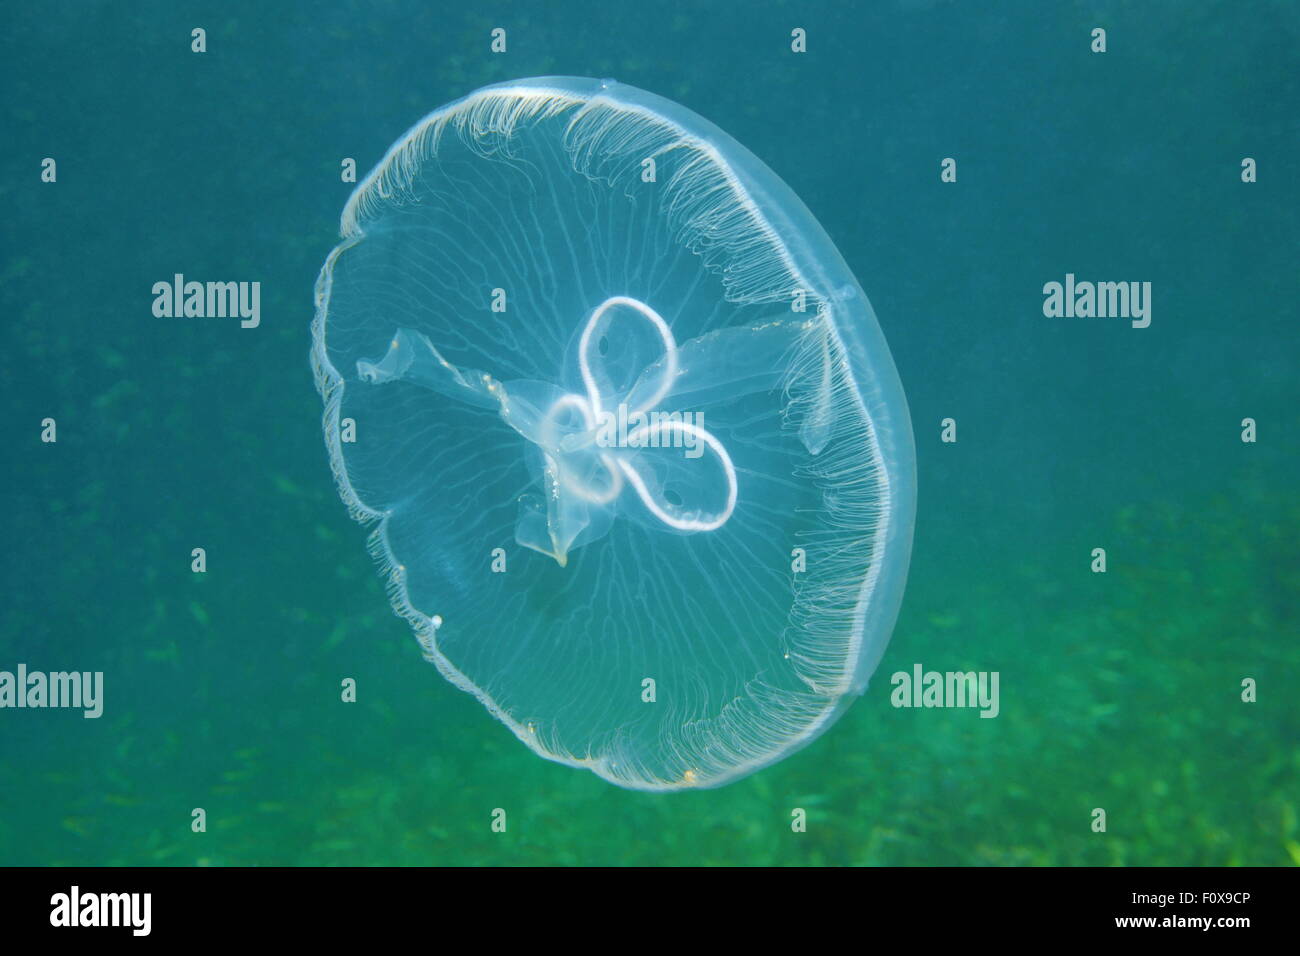 A moon jellyfish, Aurelia aurita, transparent underwater creature in the Caribbean sea Stock Photo